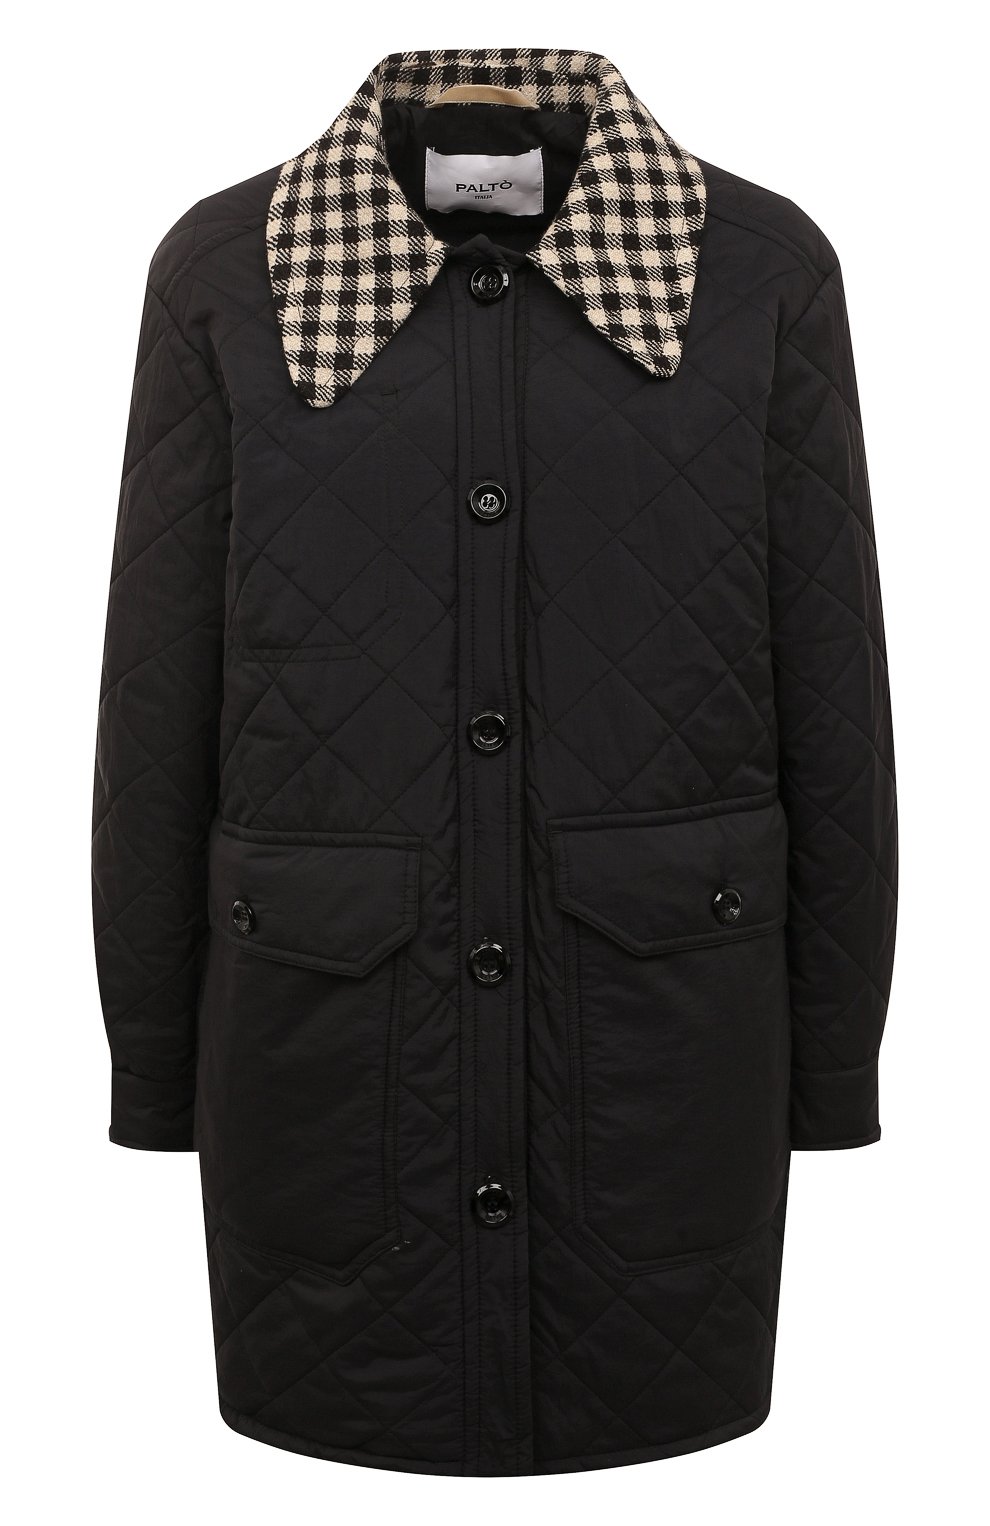 Куртки Palto, Утепленная куртка Palto, Италия, Чёрный, Нейлон: 100%; Подкладка-нейлон: 100%; Наполнитель-полиэстер: 100%;, 13068213  - купить